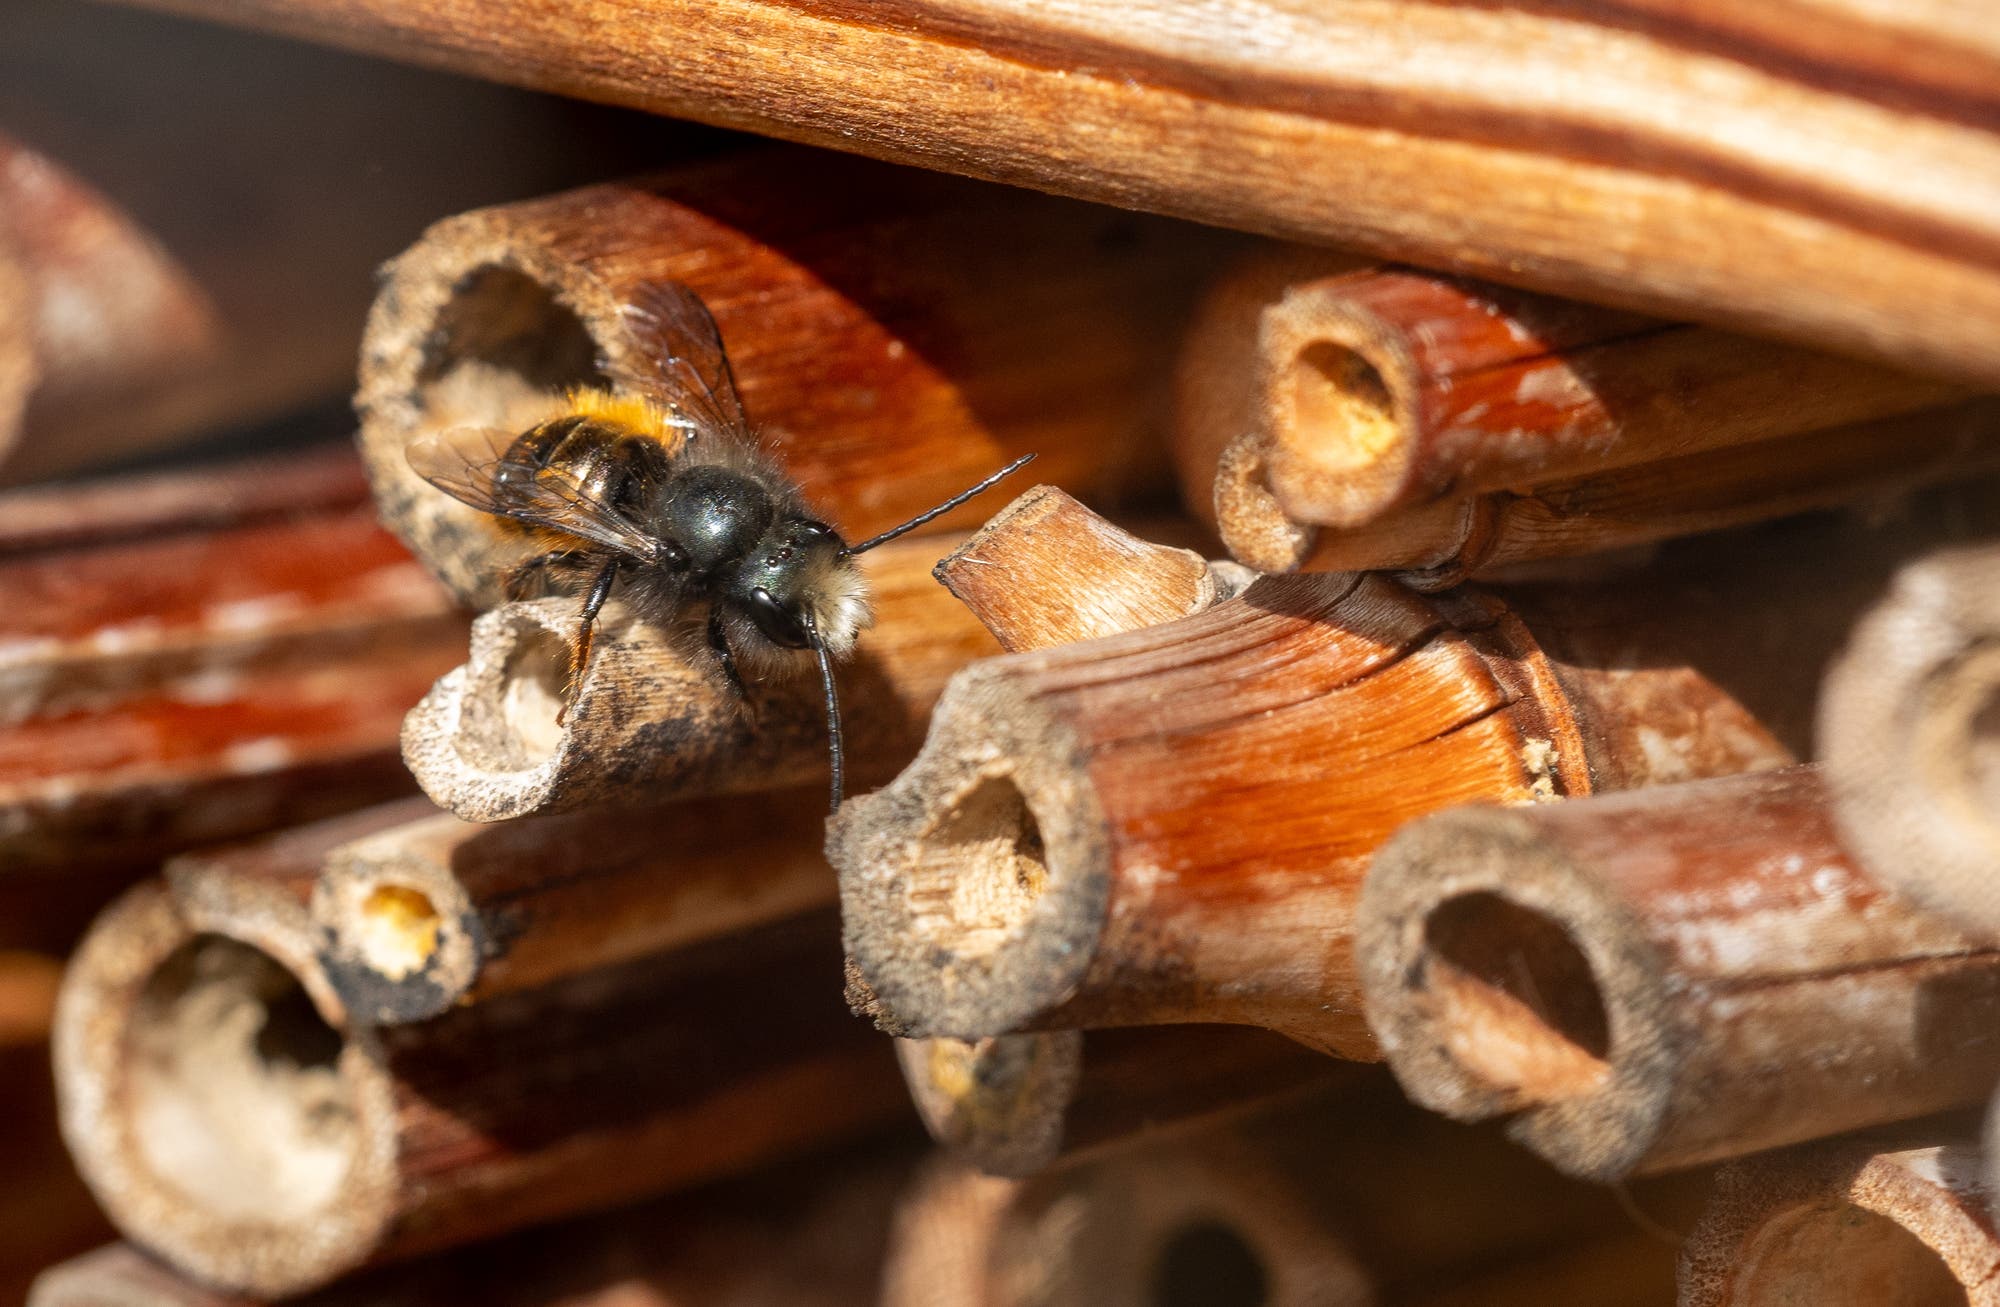 Männliche Mauerbiene mit weißer Stirn, dunklem Körper und gelbem Hinterteil sitzt auf einem Schilf- oder Bambusrohr eines Insektenhotels